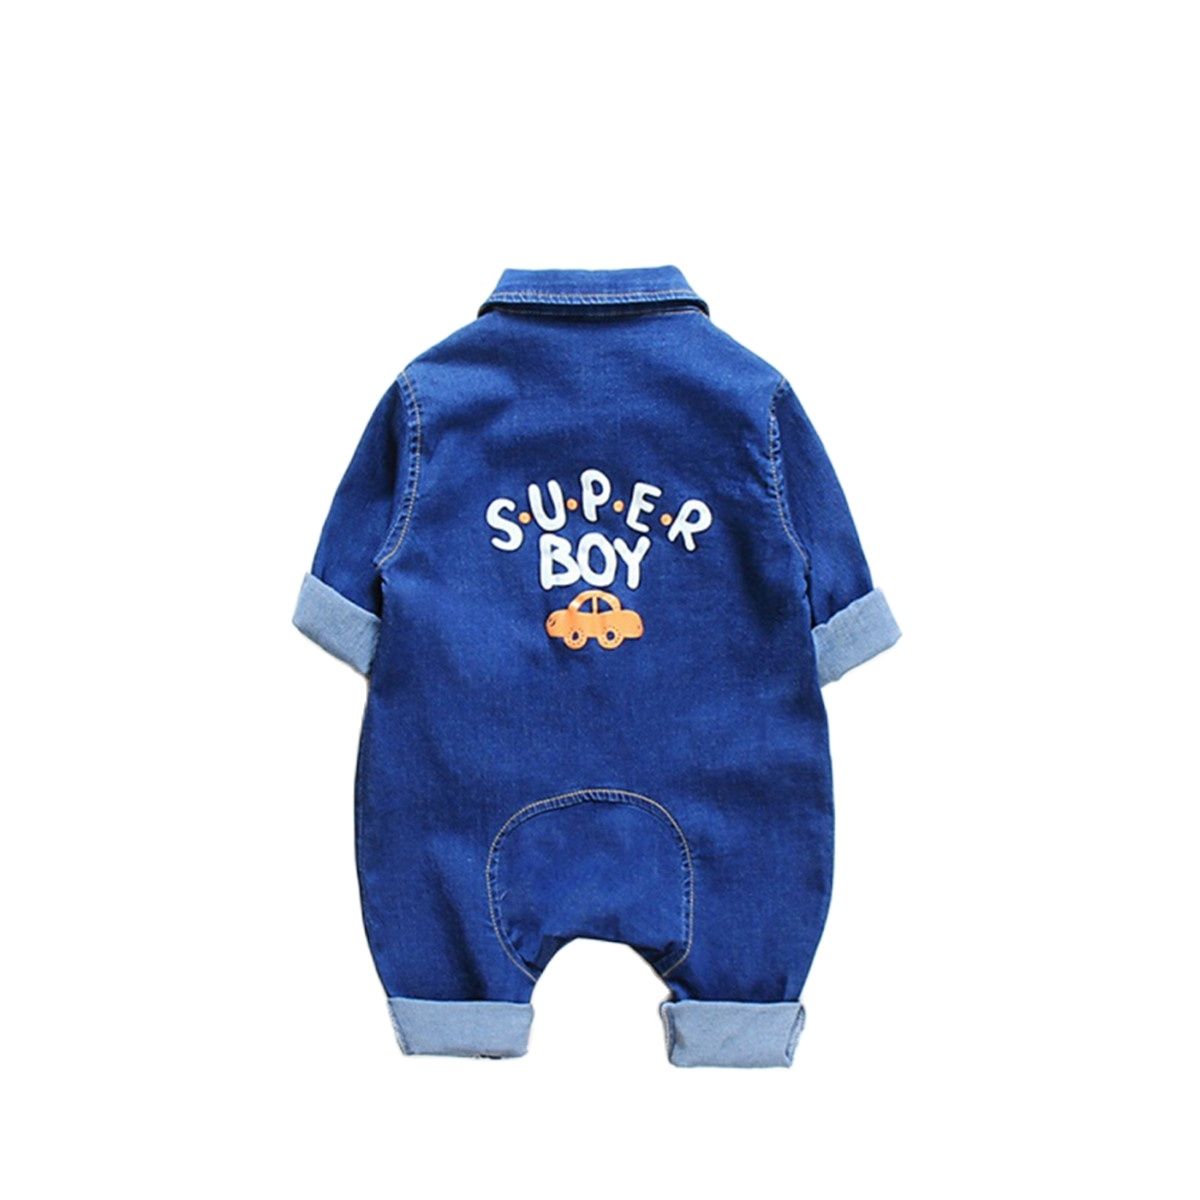 Macacão Infantil Super Boy Macacão Loja Click Certo Azul 0-6 meses 56cm 